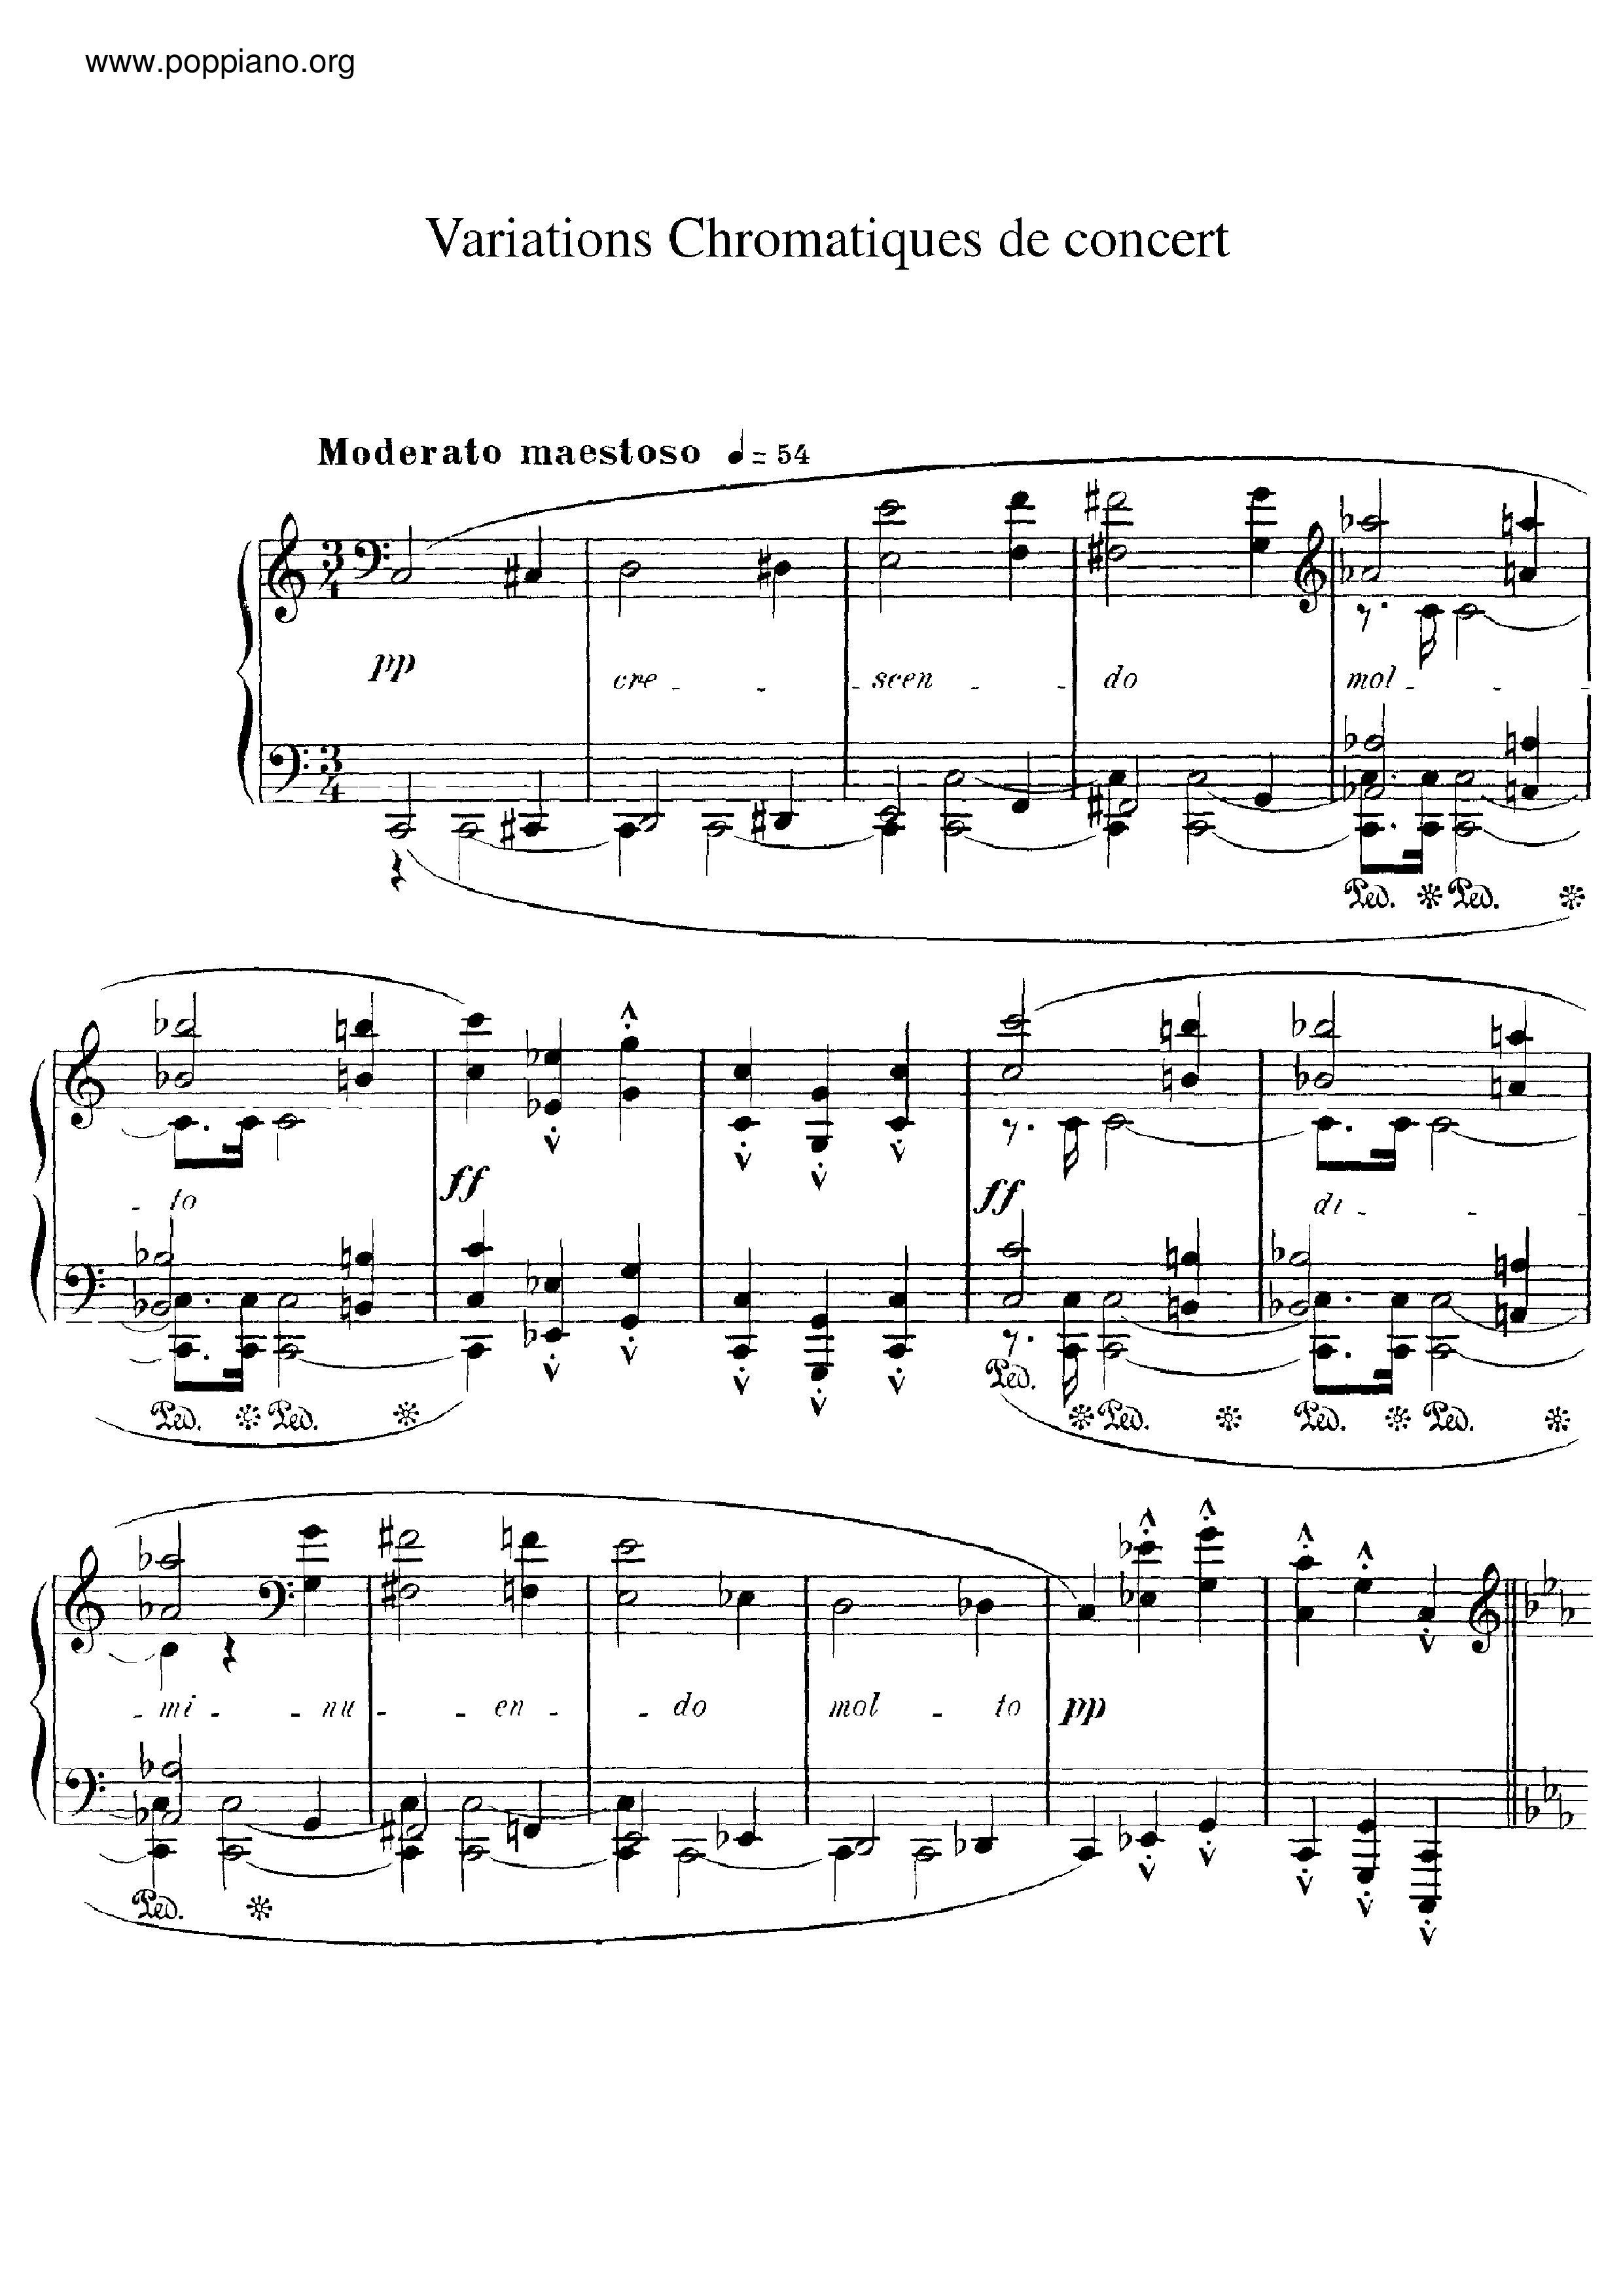 Variations Chromatiques de Concert Score